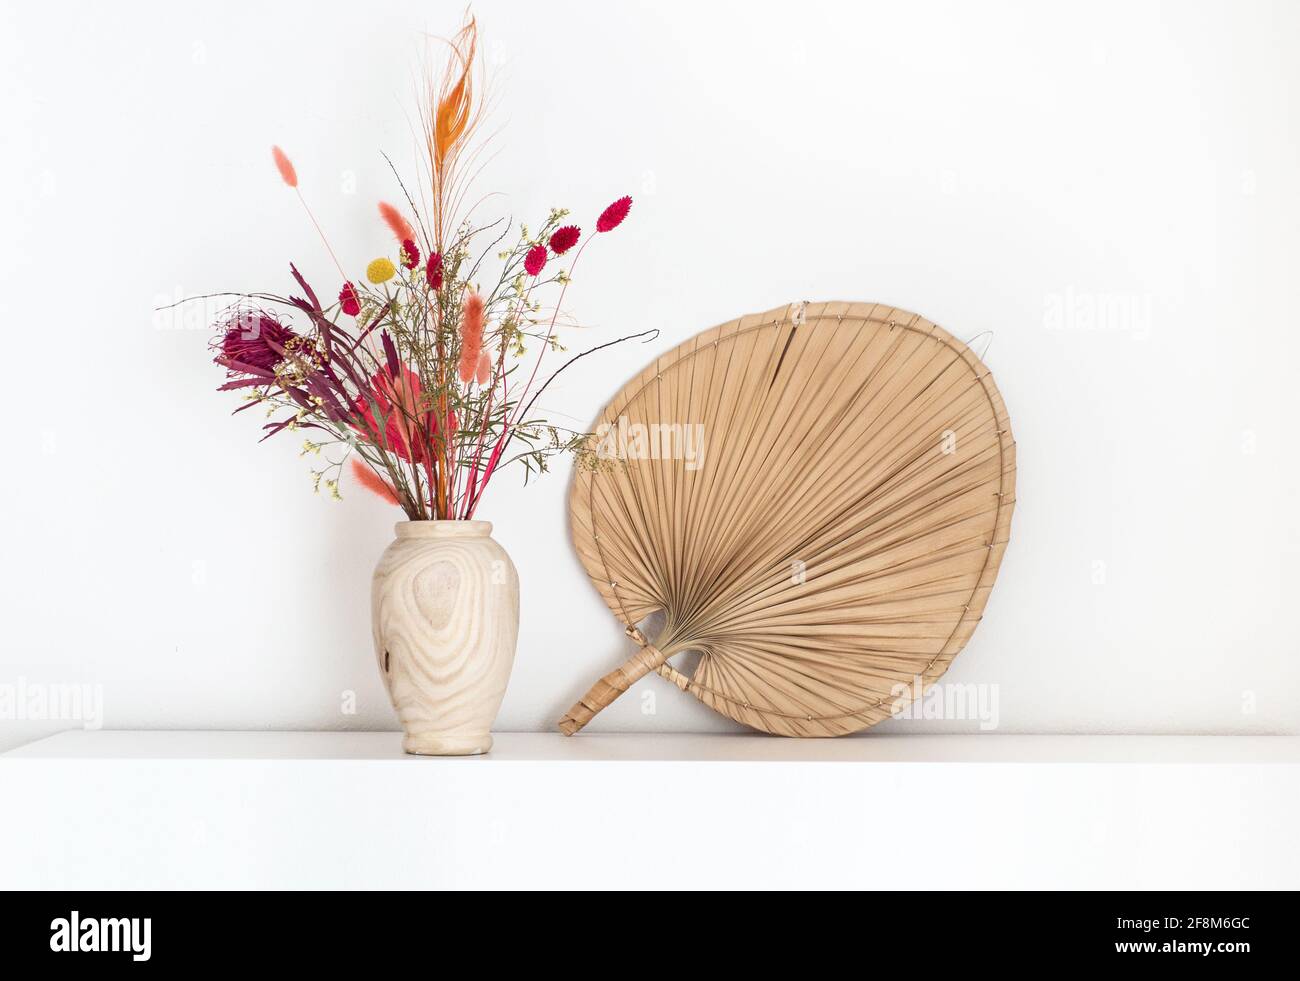 Buntes getrocknetes Blumenstrauß in einer hölzernen Vase im Boho-Stil, die auf einem weißen Regal mit einem Fächer aus getrocknetem Pam-Blatt daneben steht. Stockfoto